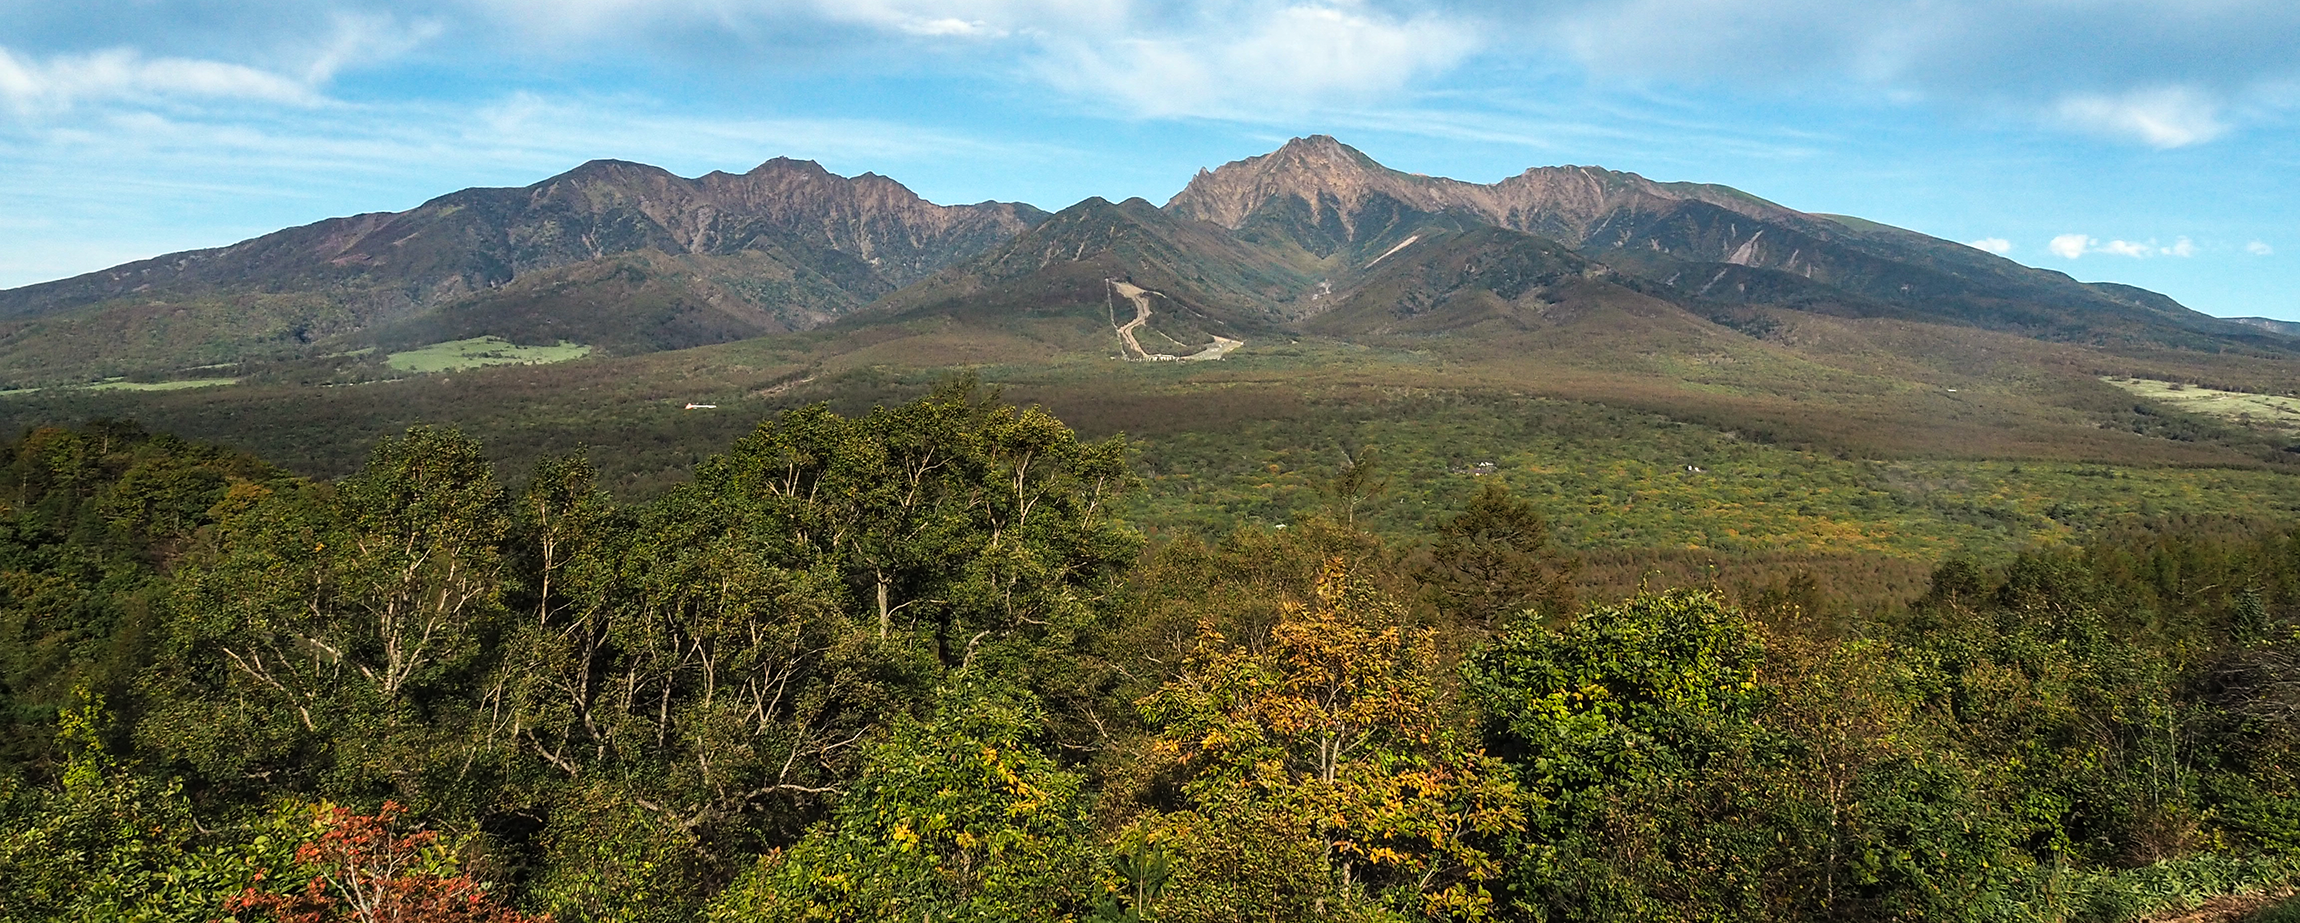 八ヶ岳の写真。宣教協議会が開催される清里は,
ヤツガタケの南東麓の高原にあります。